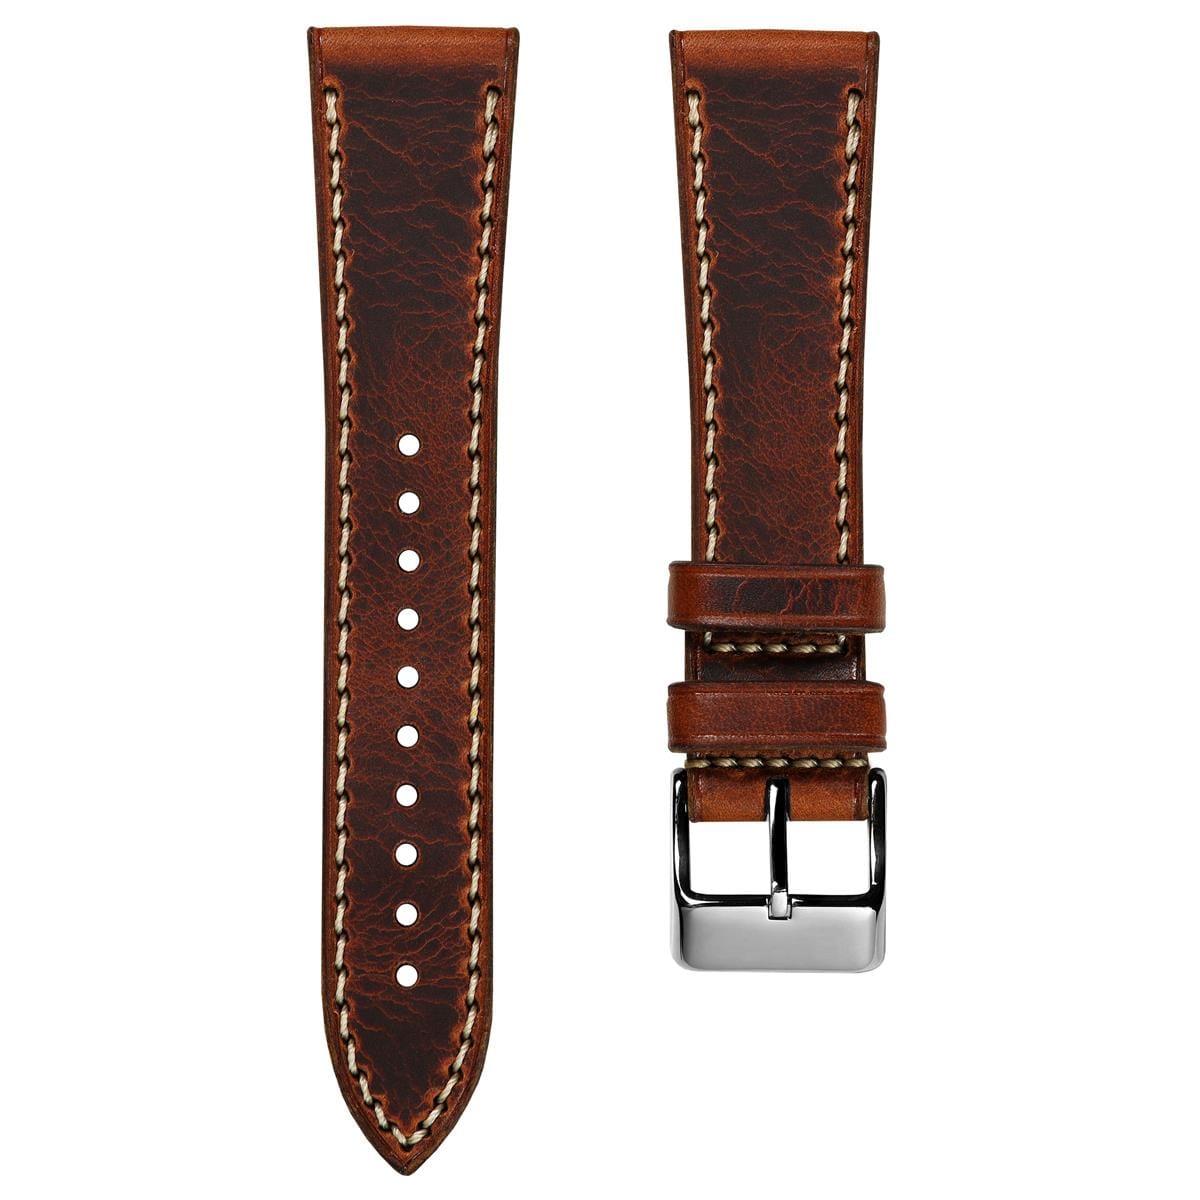 WatchGecko Hatherley Handmade Leather Watch Strap - Reddish Brown